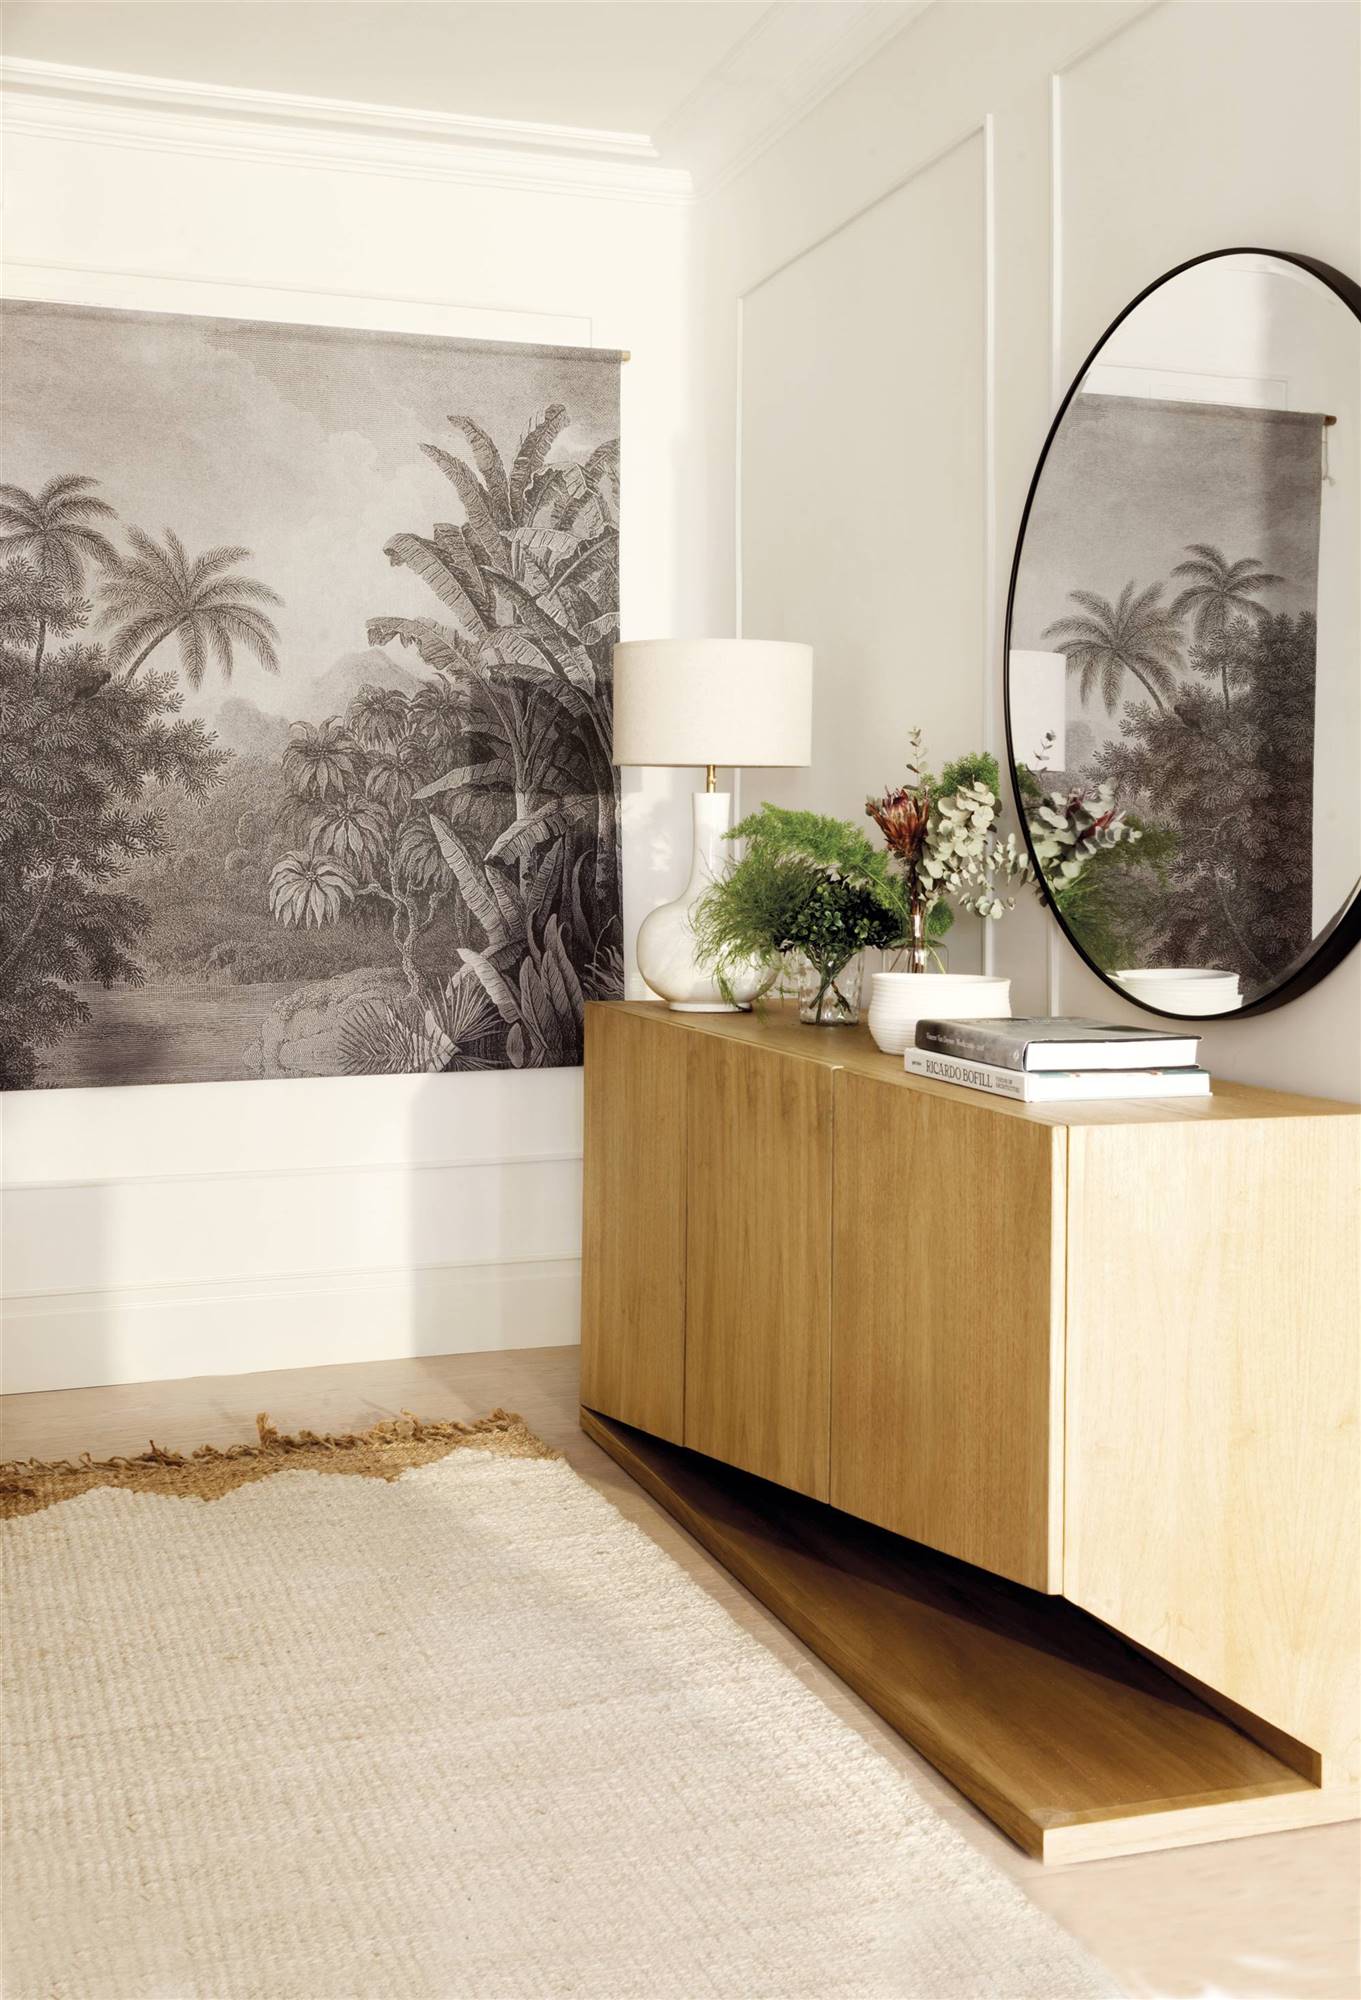 Recibidor moderno con mueble de madera y espejo redondo. 